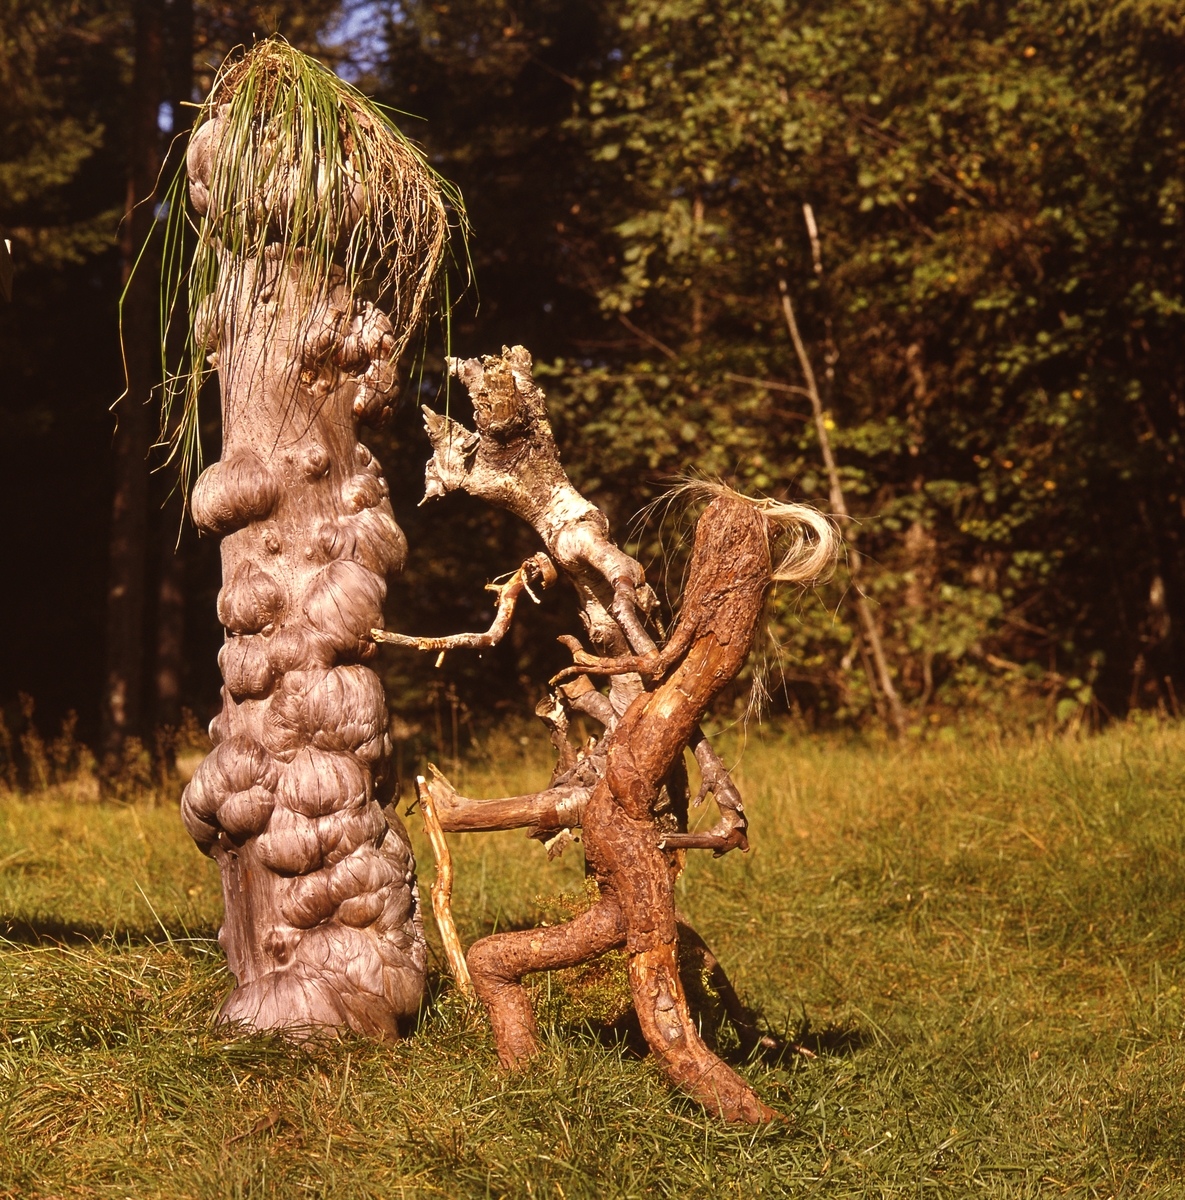 Trätrollet Skrälla Skrälle och en annan träfigur står vid en knotig stam med en grästuva på toppen.